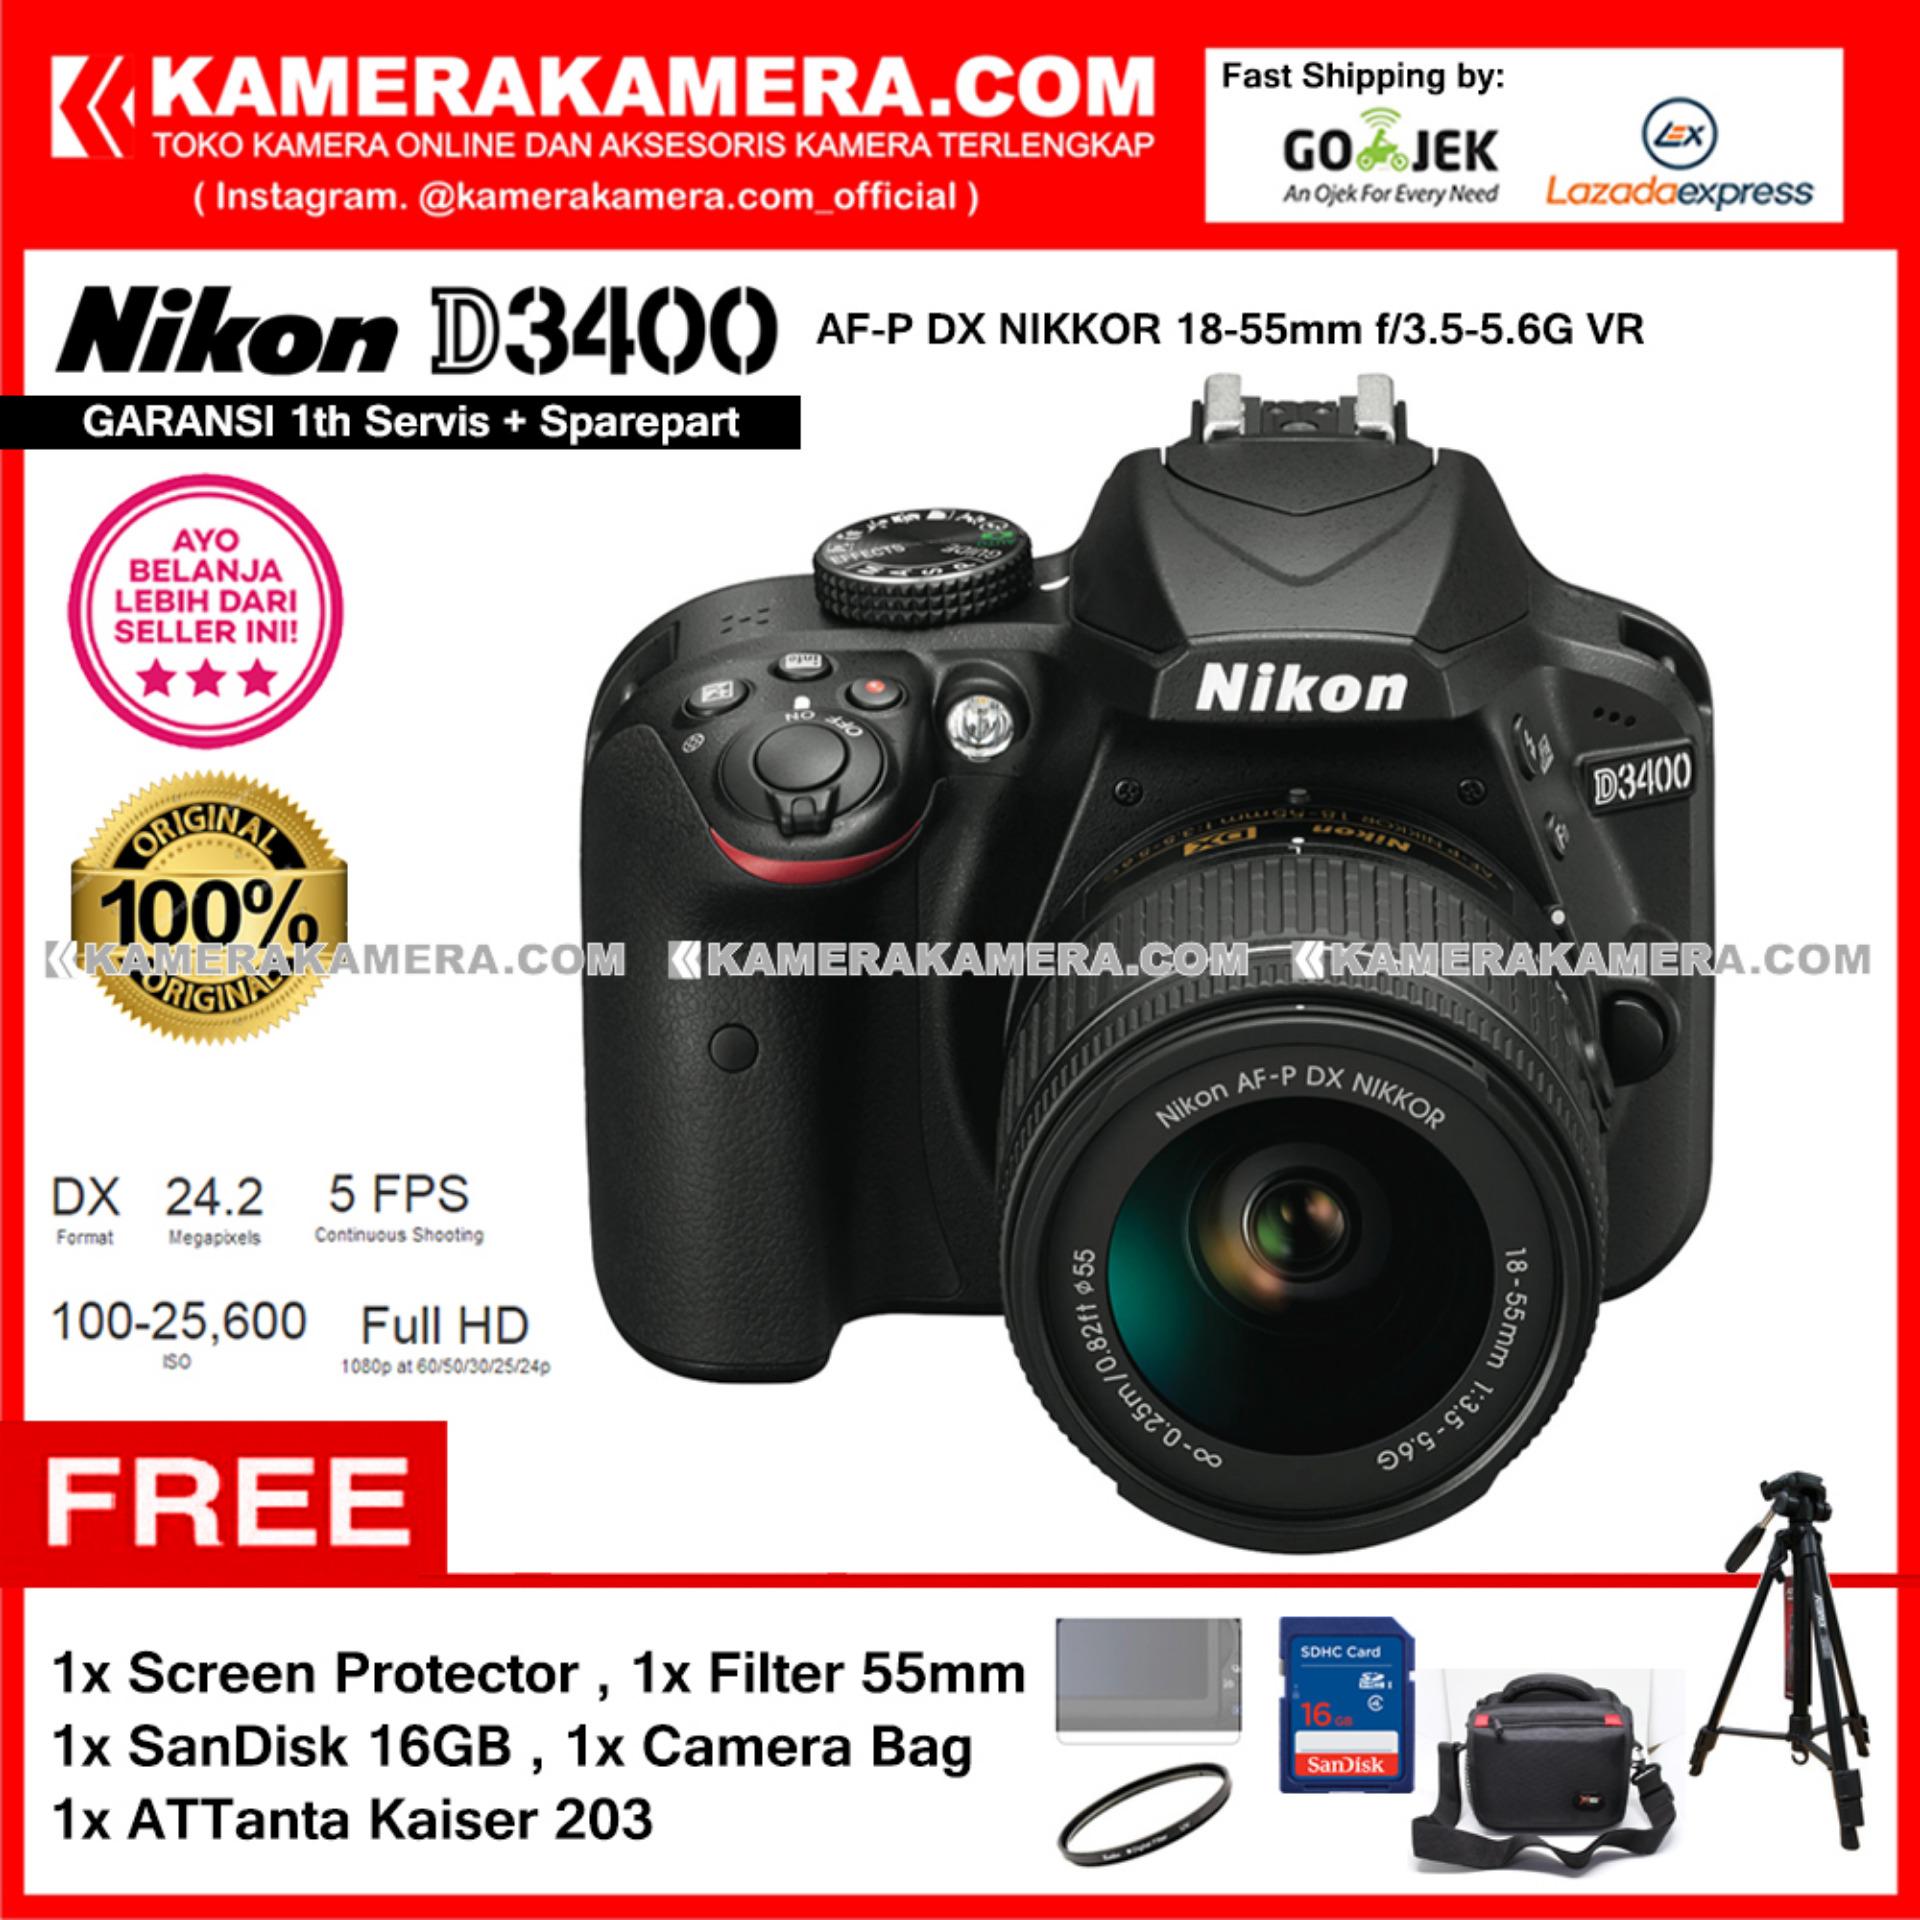  Nikon D3400 AF-P DX Nikkor 18-55 VR Kit 24MP DX-format APS-C CMOS Sensor Full HD 1080p 60 fps Built-in Wireless (Garansi 1th) Free Screen Guard + SanDisk 16gb + Filter 55mm + Camera Bag + ATTanta Kaiser 203